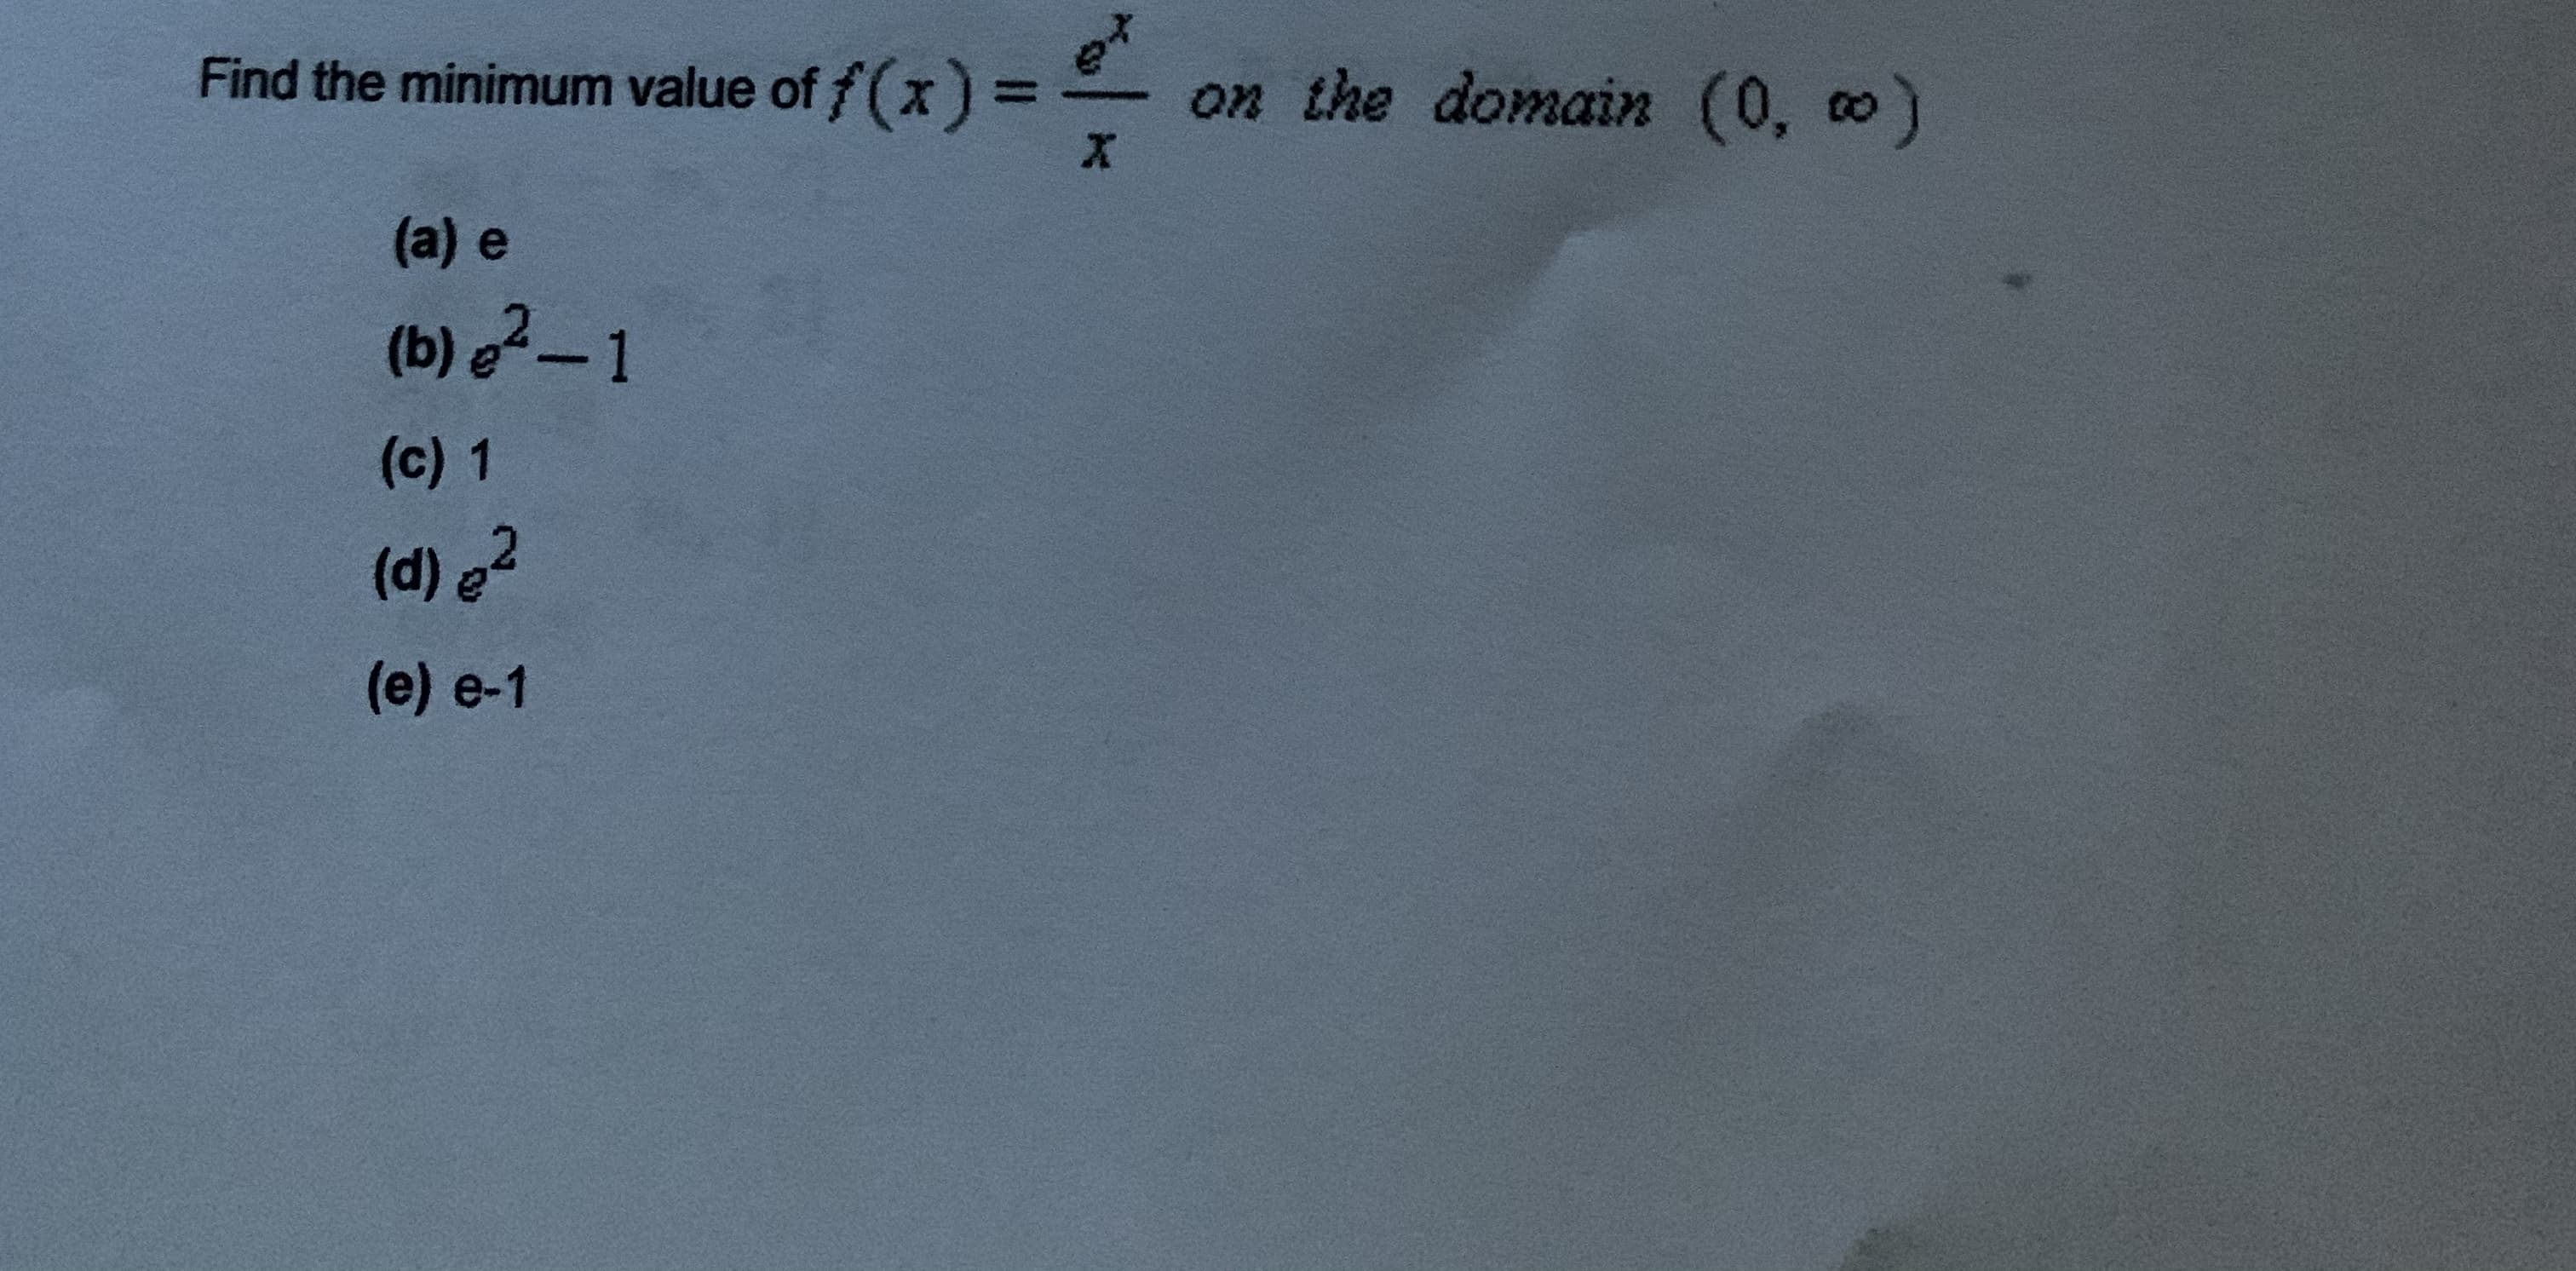 Find the minimum value of f(x) =
on the domain (0, o
(a) e
(b) e?– 1
(c) 1
(d) e?
(e) e-1
